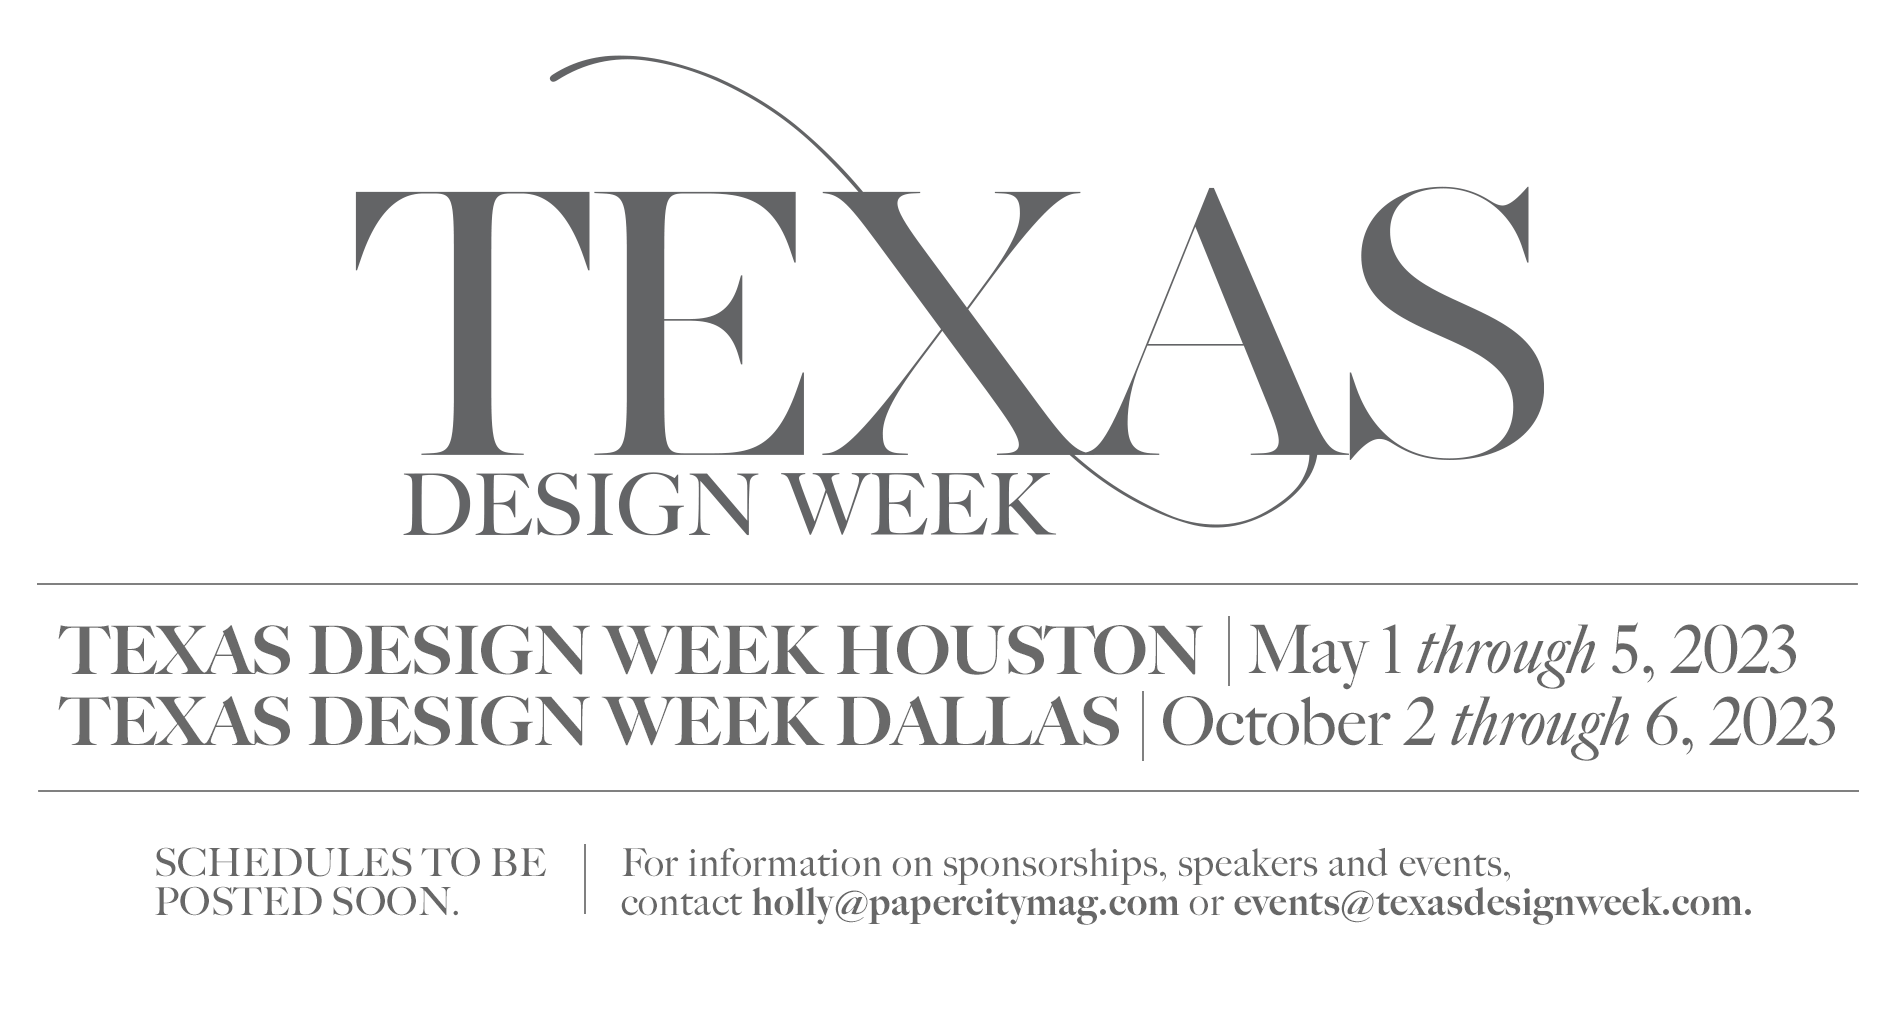 Texas Design Week Houston & Dallas 2023